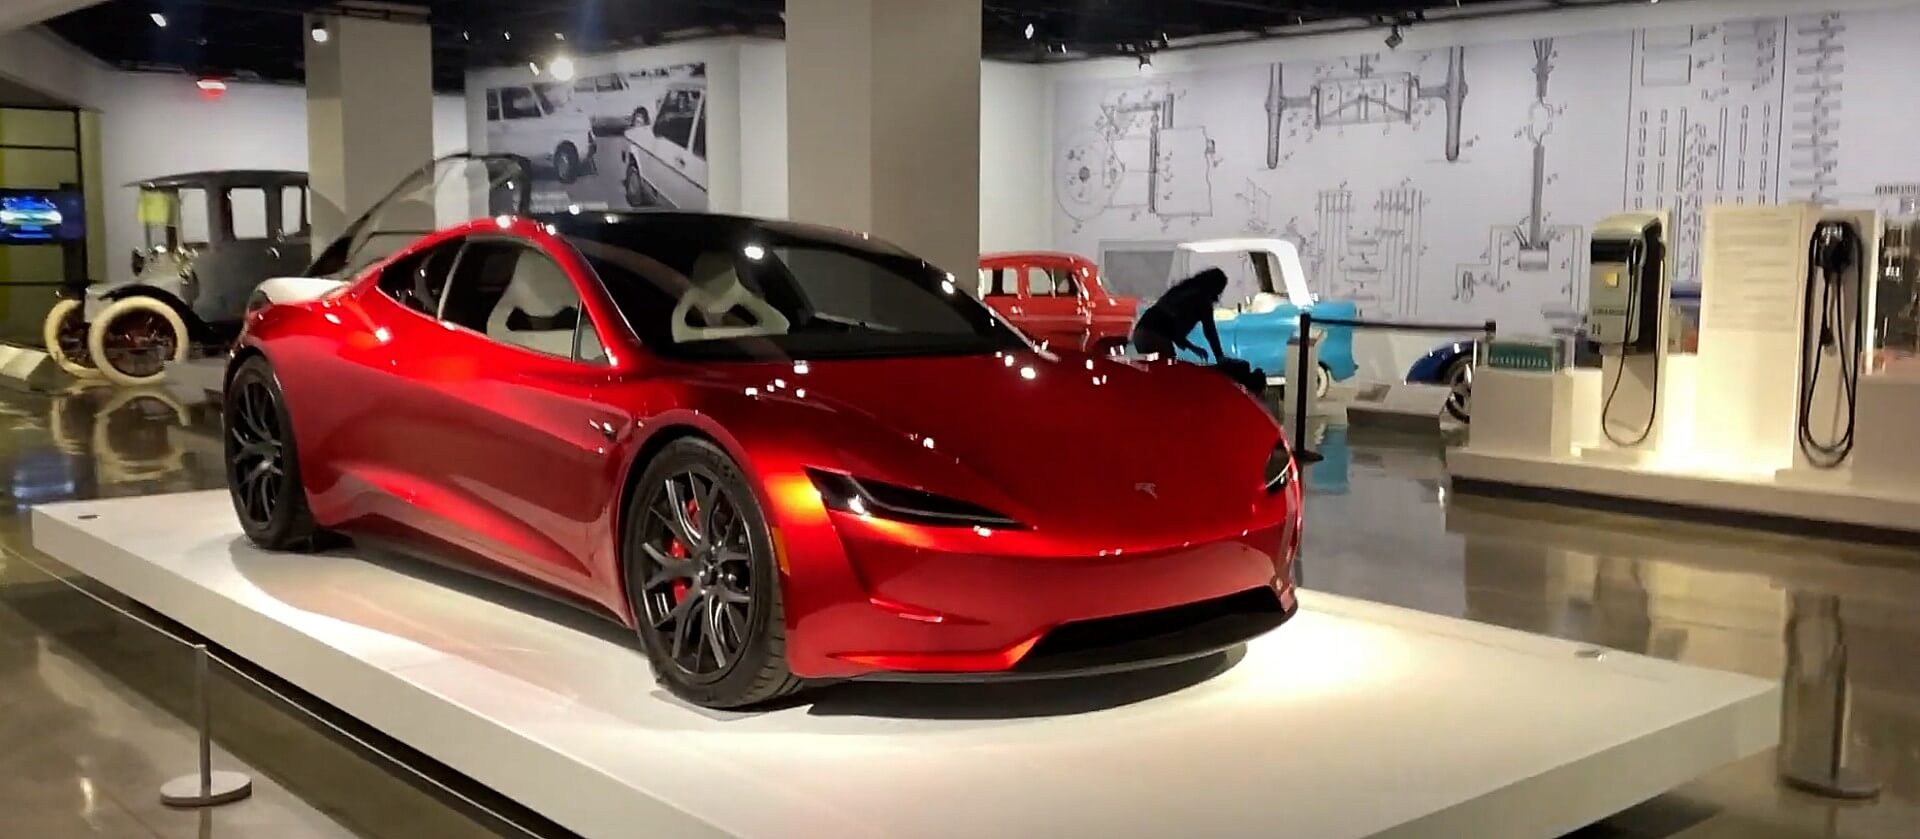 Tesla возвращается в автомобильный музей Петерсена с новой выставкой, ориентированной на компанию